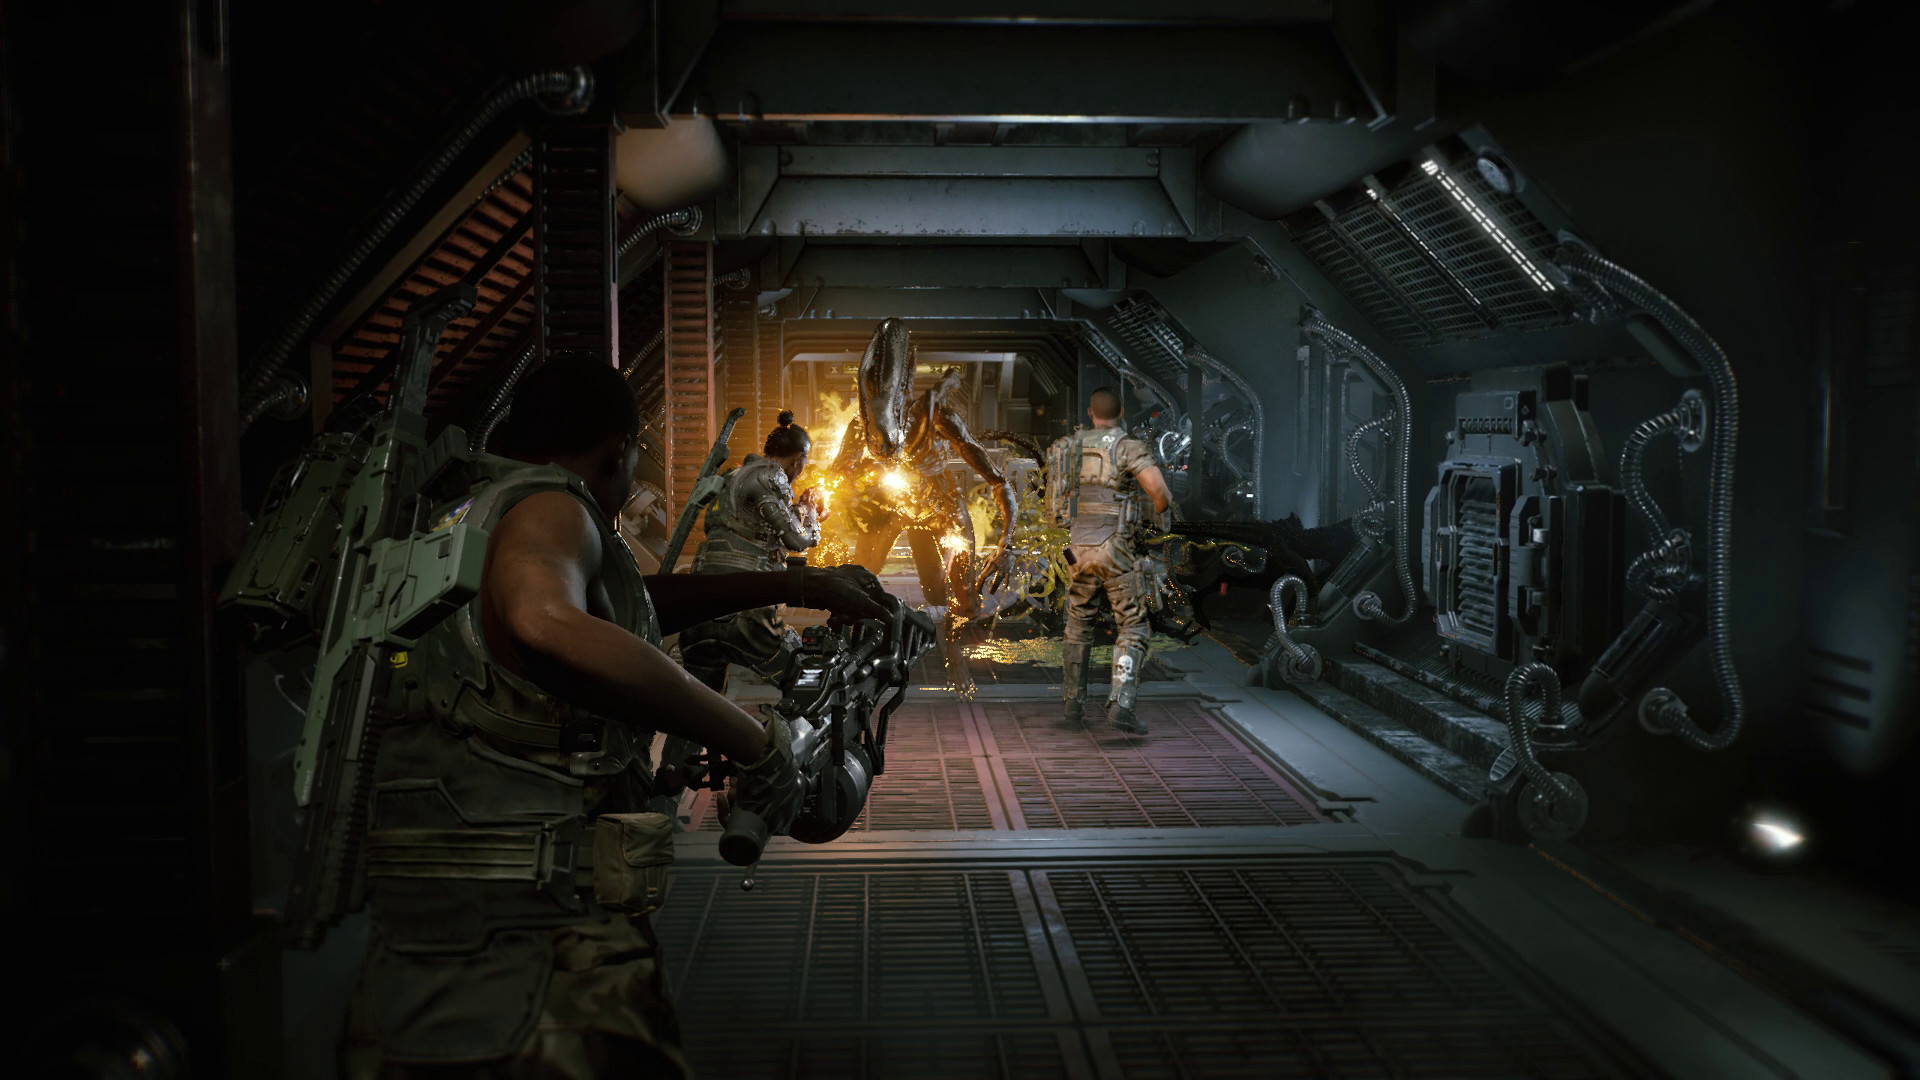 映画「エイリアン」の協力マルチプレイゲーム『Aliens: Fireteam Elite』が海外で8月24日に発売決定。3人でチームを組んで恐ろしい映画の「エイリアン」と戦う三人称視点シューティングアクション_003